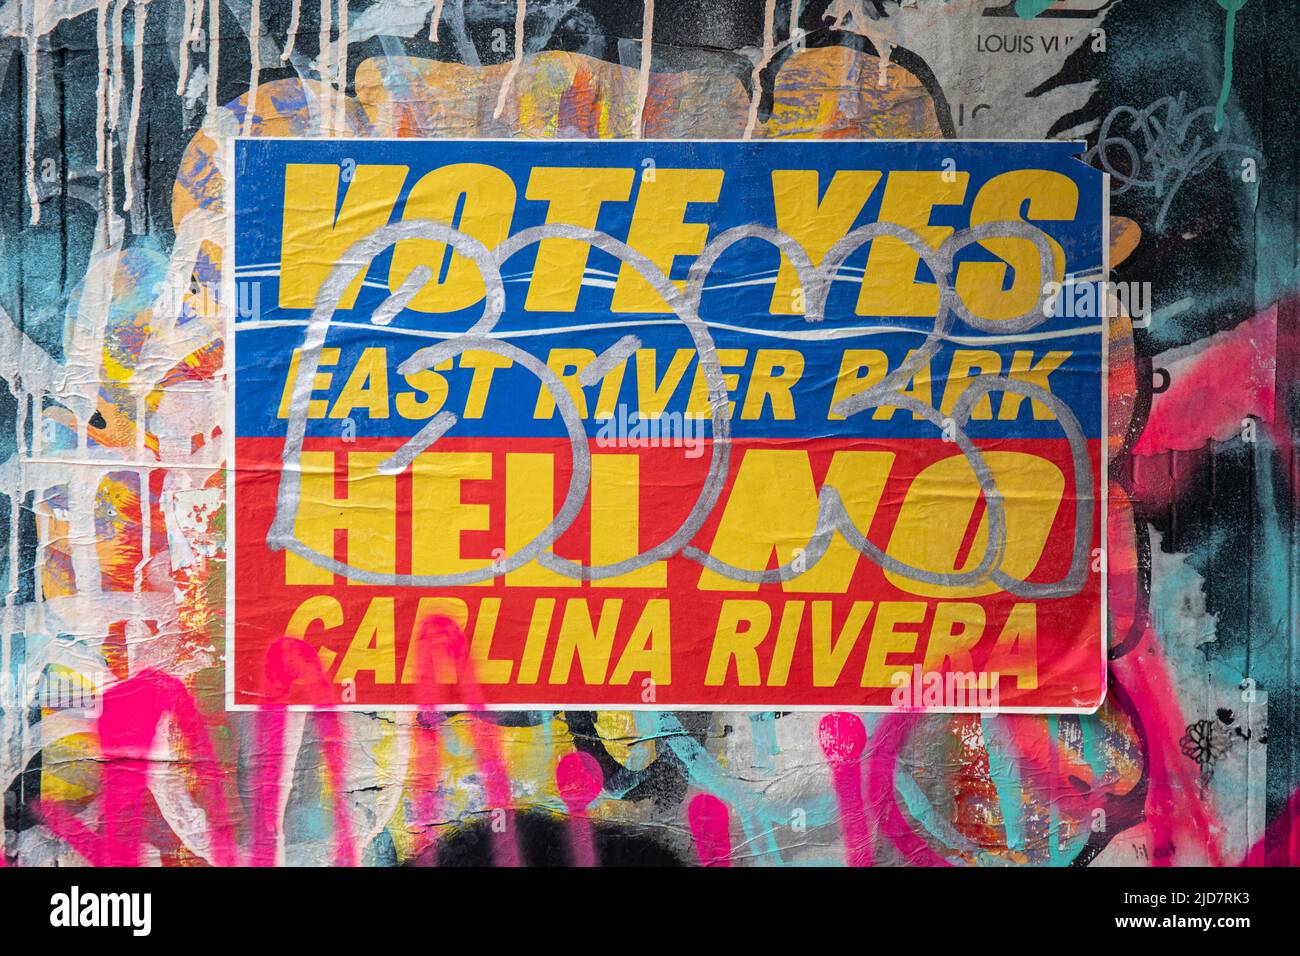 Stimmen Ja East River Park. Keine Hölle, Carlina Rivera. Politischer Aufkleber im Stadtteil Alphabet City von New York City, Vereinigte Staaten von Amerika. Stockfoto